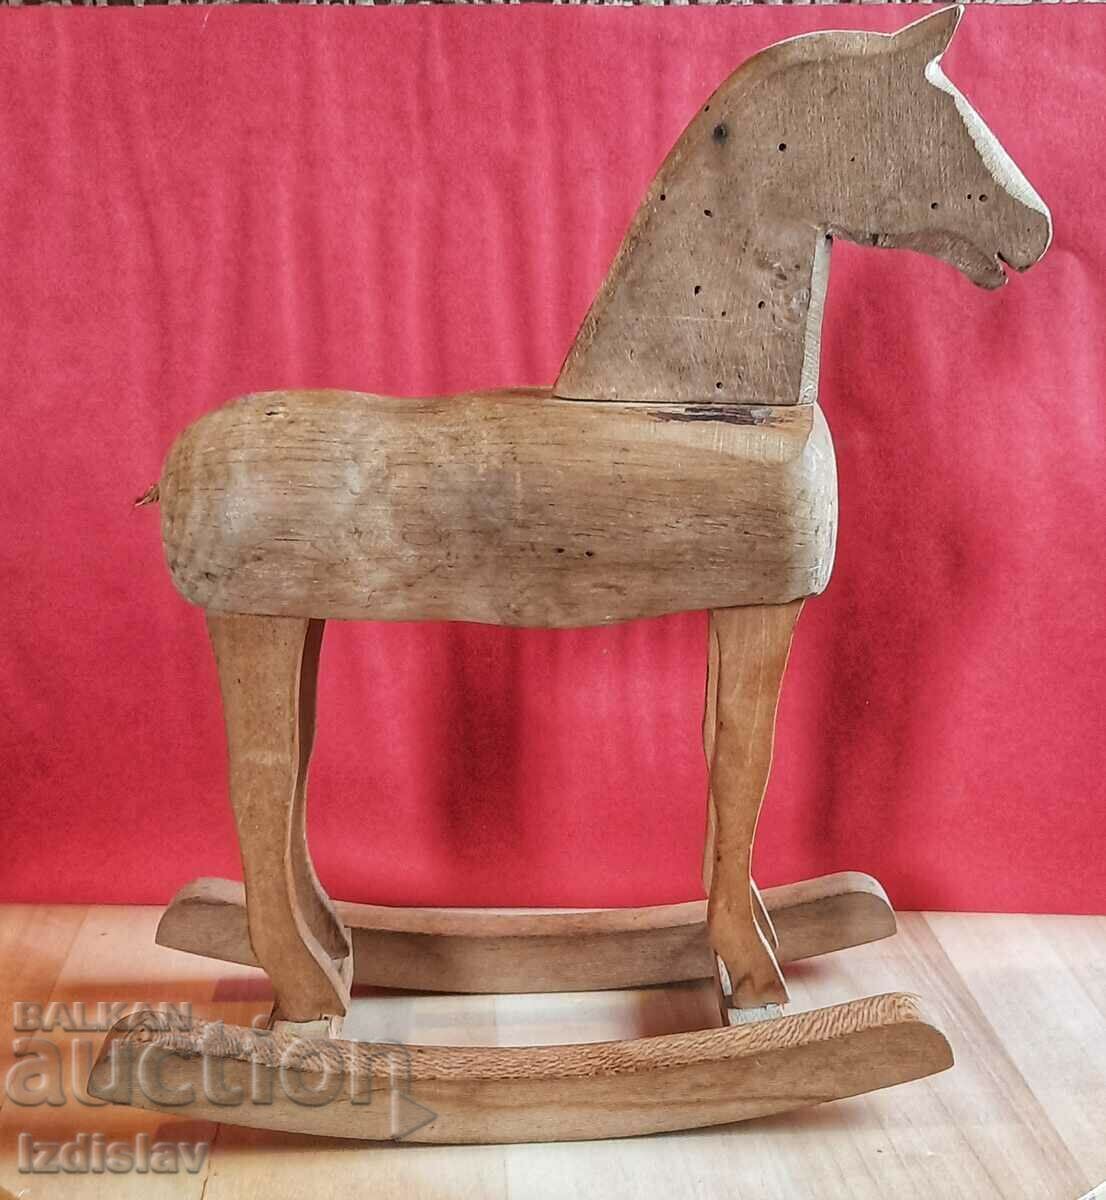 Εκλεκτής ποιότητας ξύλινο παιχνίδι κουνιστό άλογο.